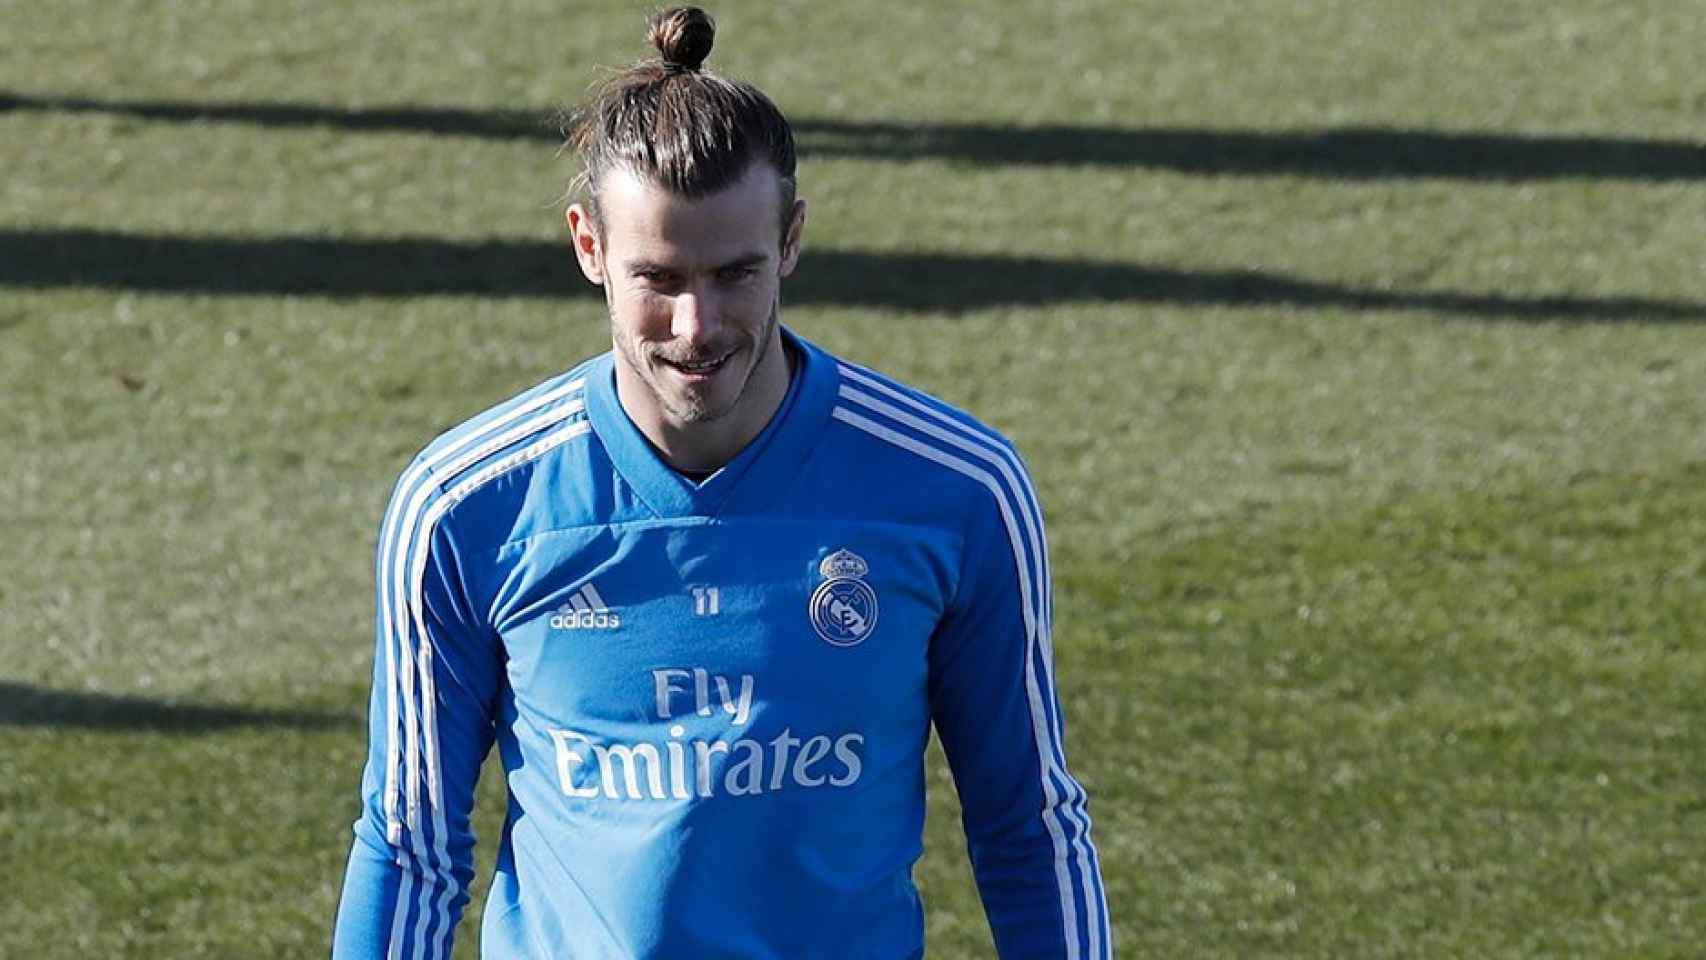 El jugador del Real Madrid Gareth Bale, durante un entrenamiento del equipo / EFE